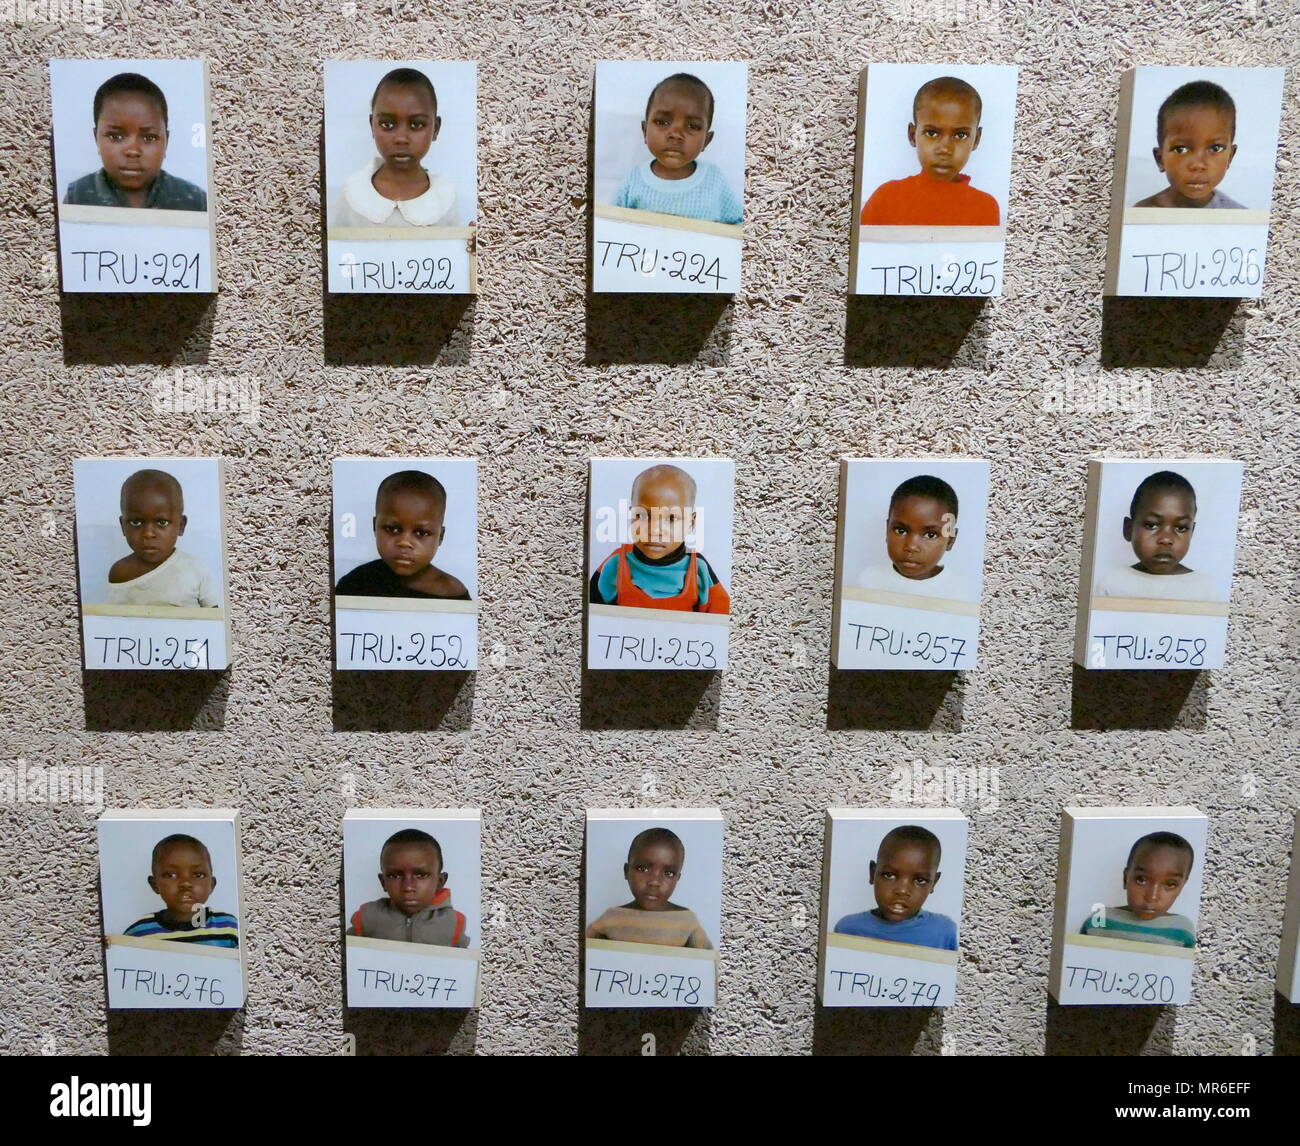 Fotografia di bambini separati dalle loro famiglie durante il 1994 genocidio in Ruanda. Questo è stato un genocidio di abbattimento di massa di Tutsi tribali in Ruanda, dai membri della maggioranza Hutu. Un importo stimato di 500.000 1.000.000 ruandesi sono stati uccisi durante il periodo di cento giorni dal 7 aprile a metà luglio 1994. Foto Stock